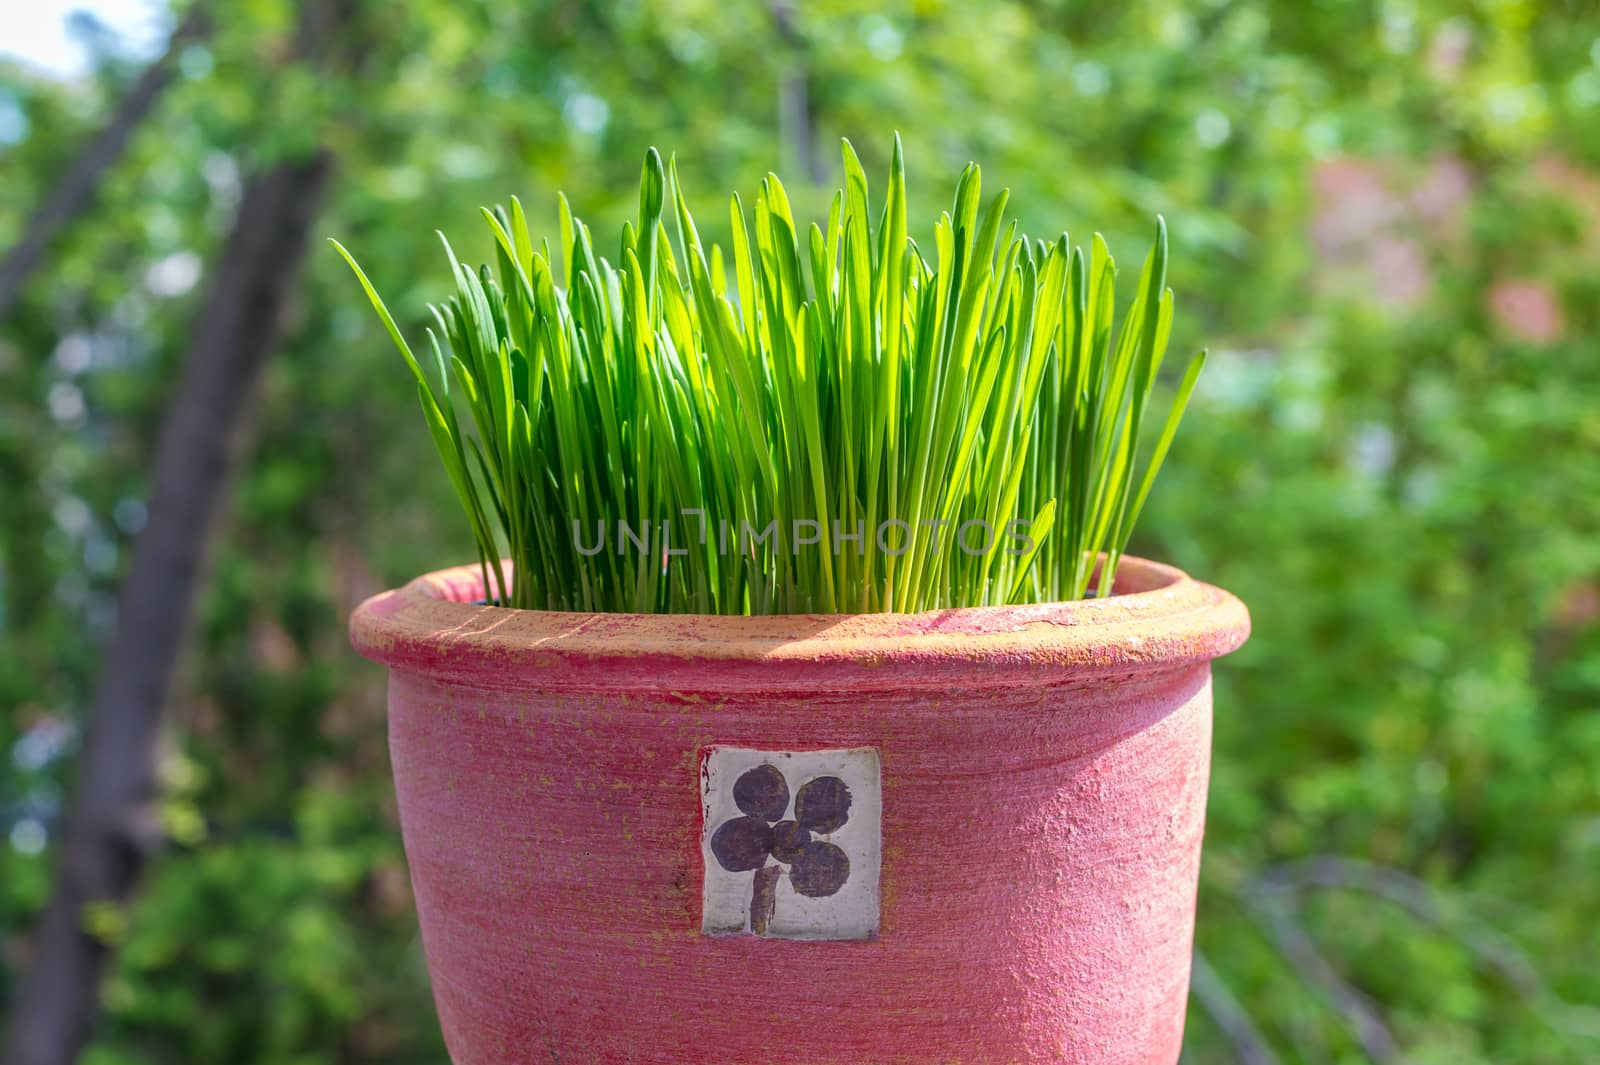 Cat grass growing in a pink terra cotta pot